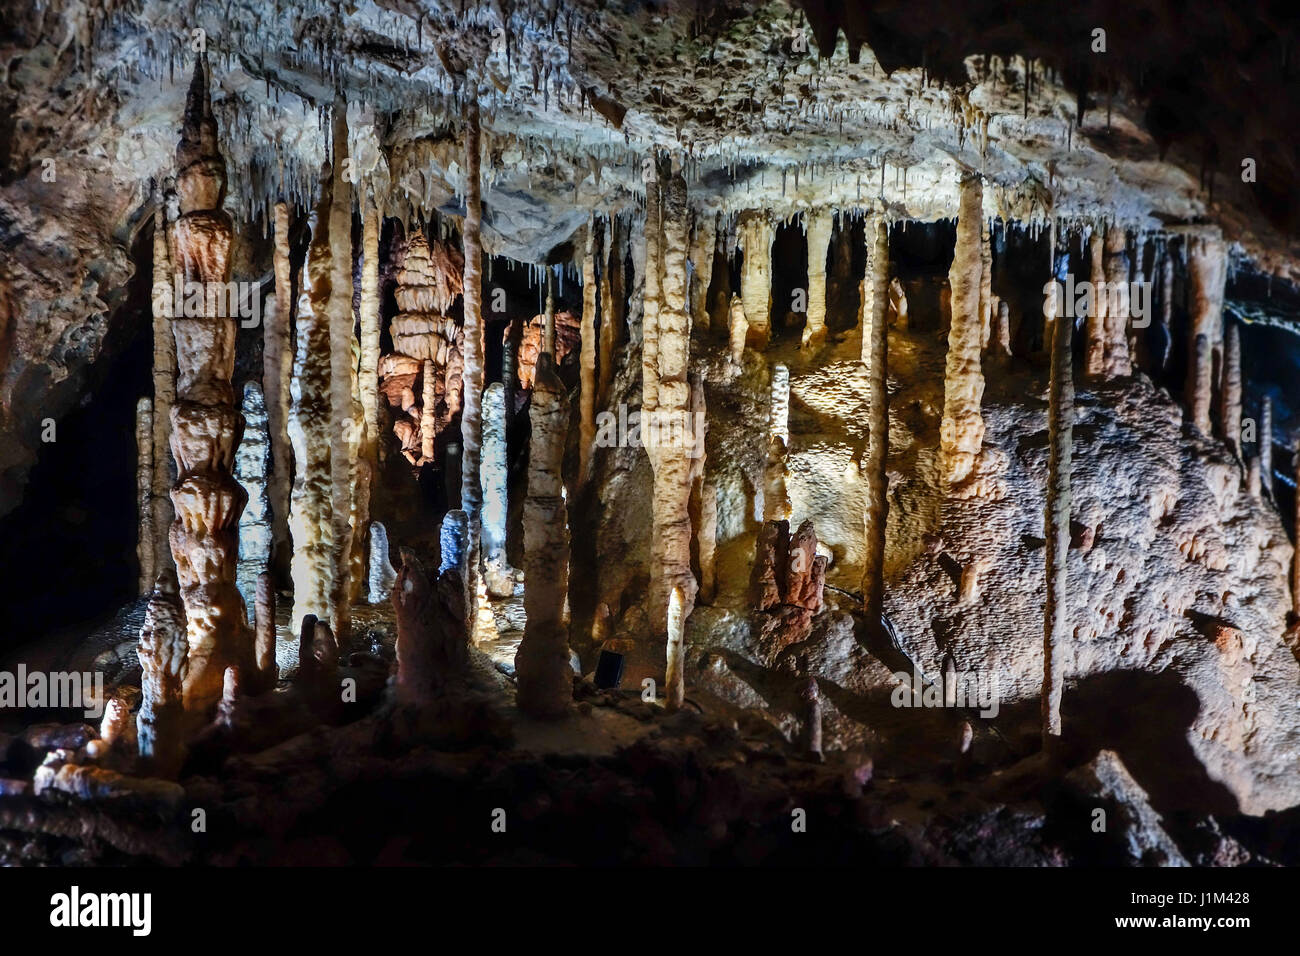 Stroh Stalaktiten, Stalagmiten und Säulen aus Kalkstein Höhle der Grotten von Han-Sur-Lesse / Grottes de Han, belgische Ardennen, Belgien Stockfoto